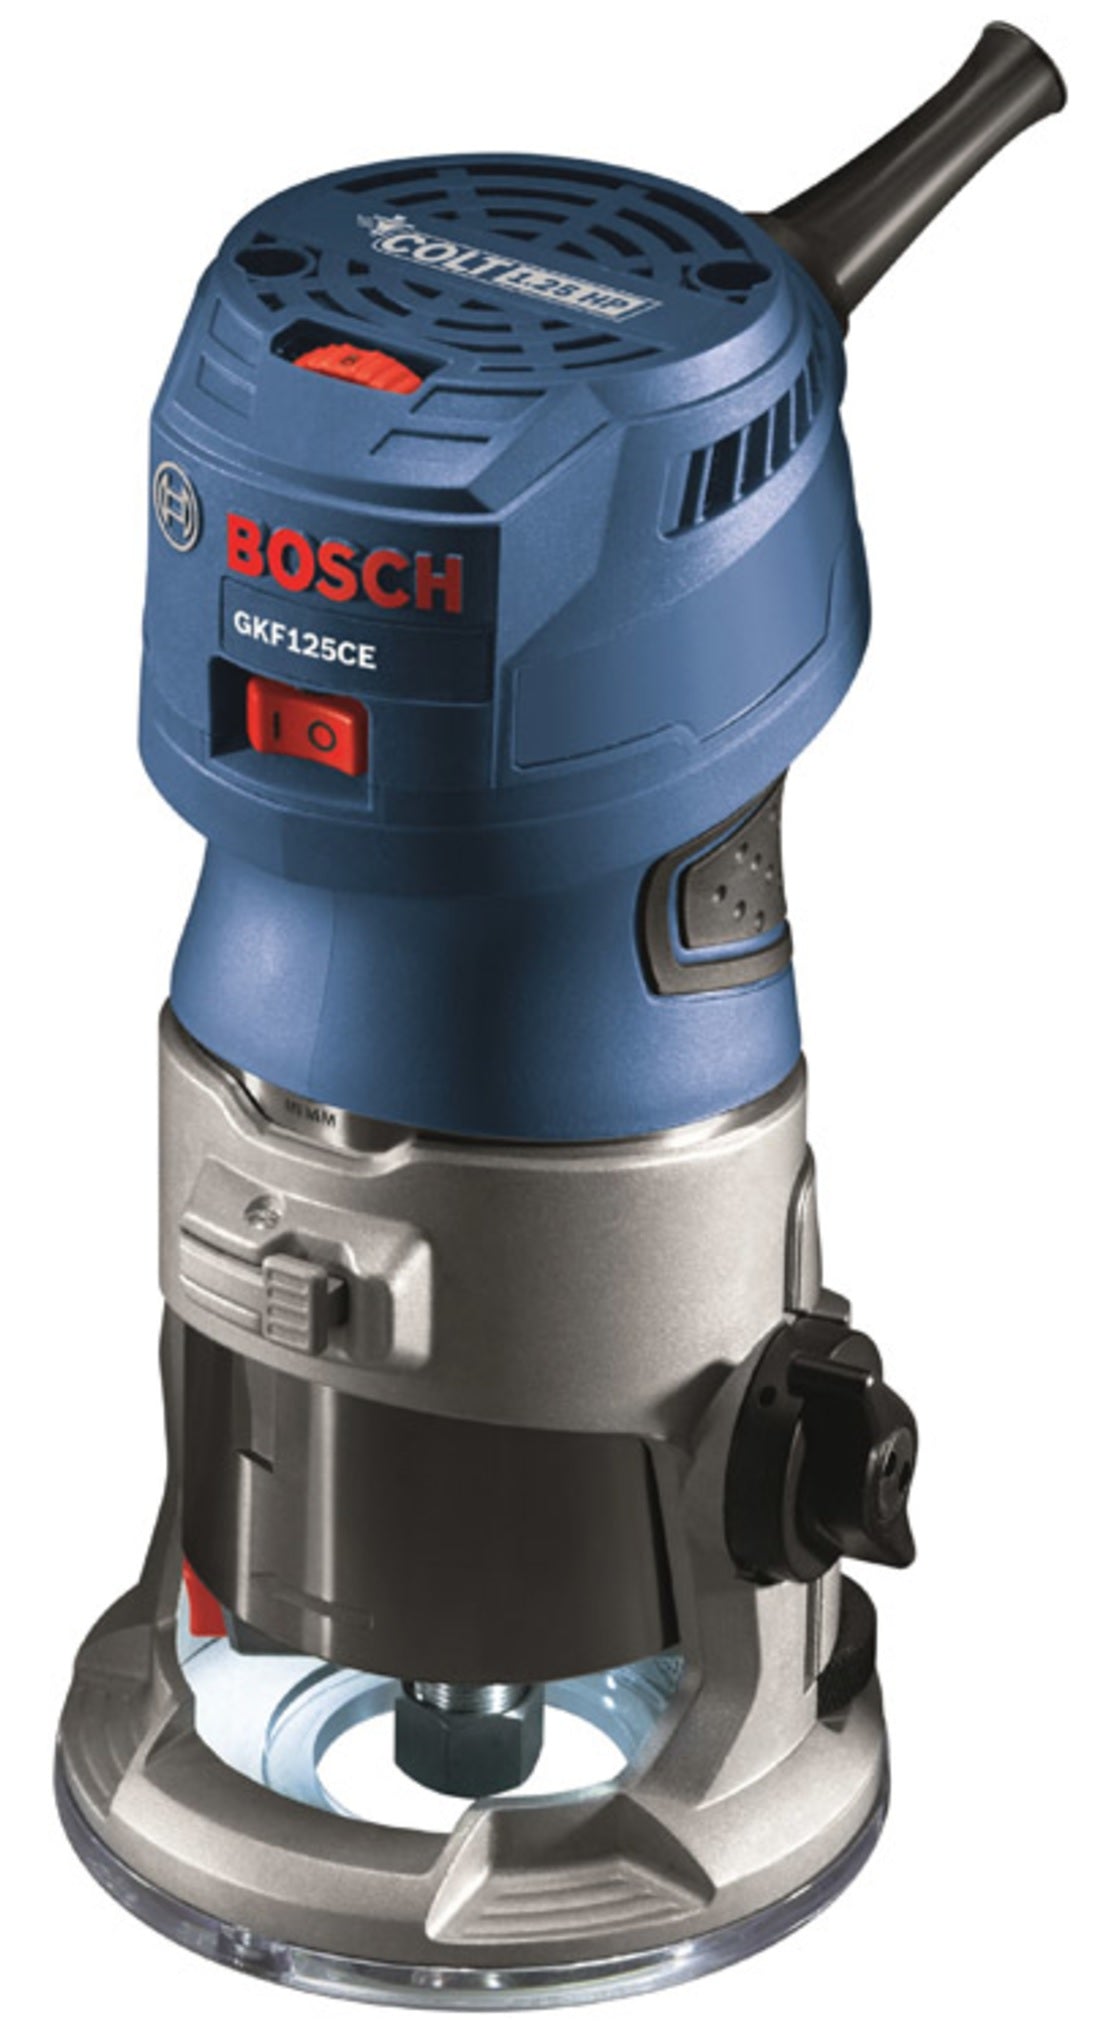 Bosch GKF125CEN Colt Palm Router, 1.25 HP